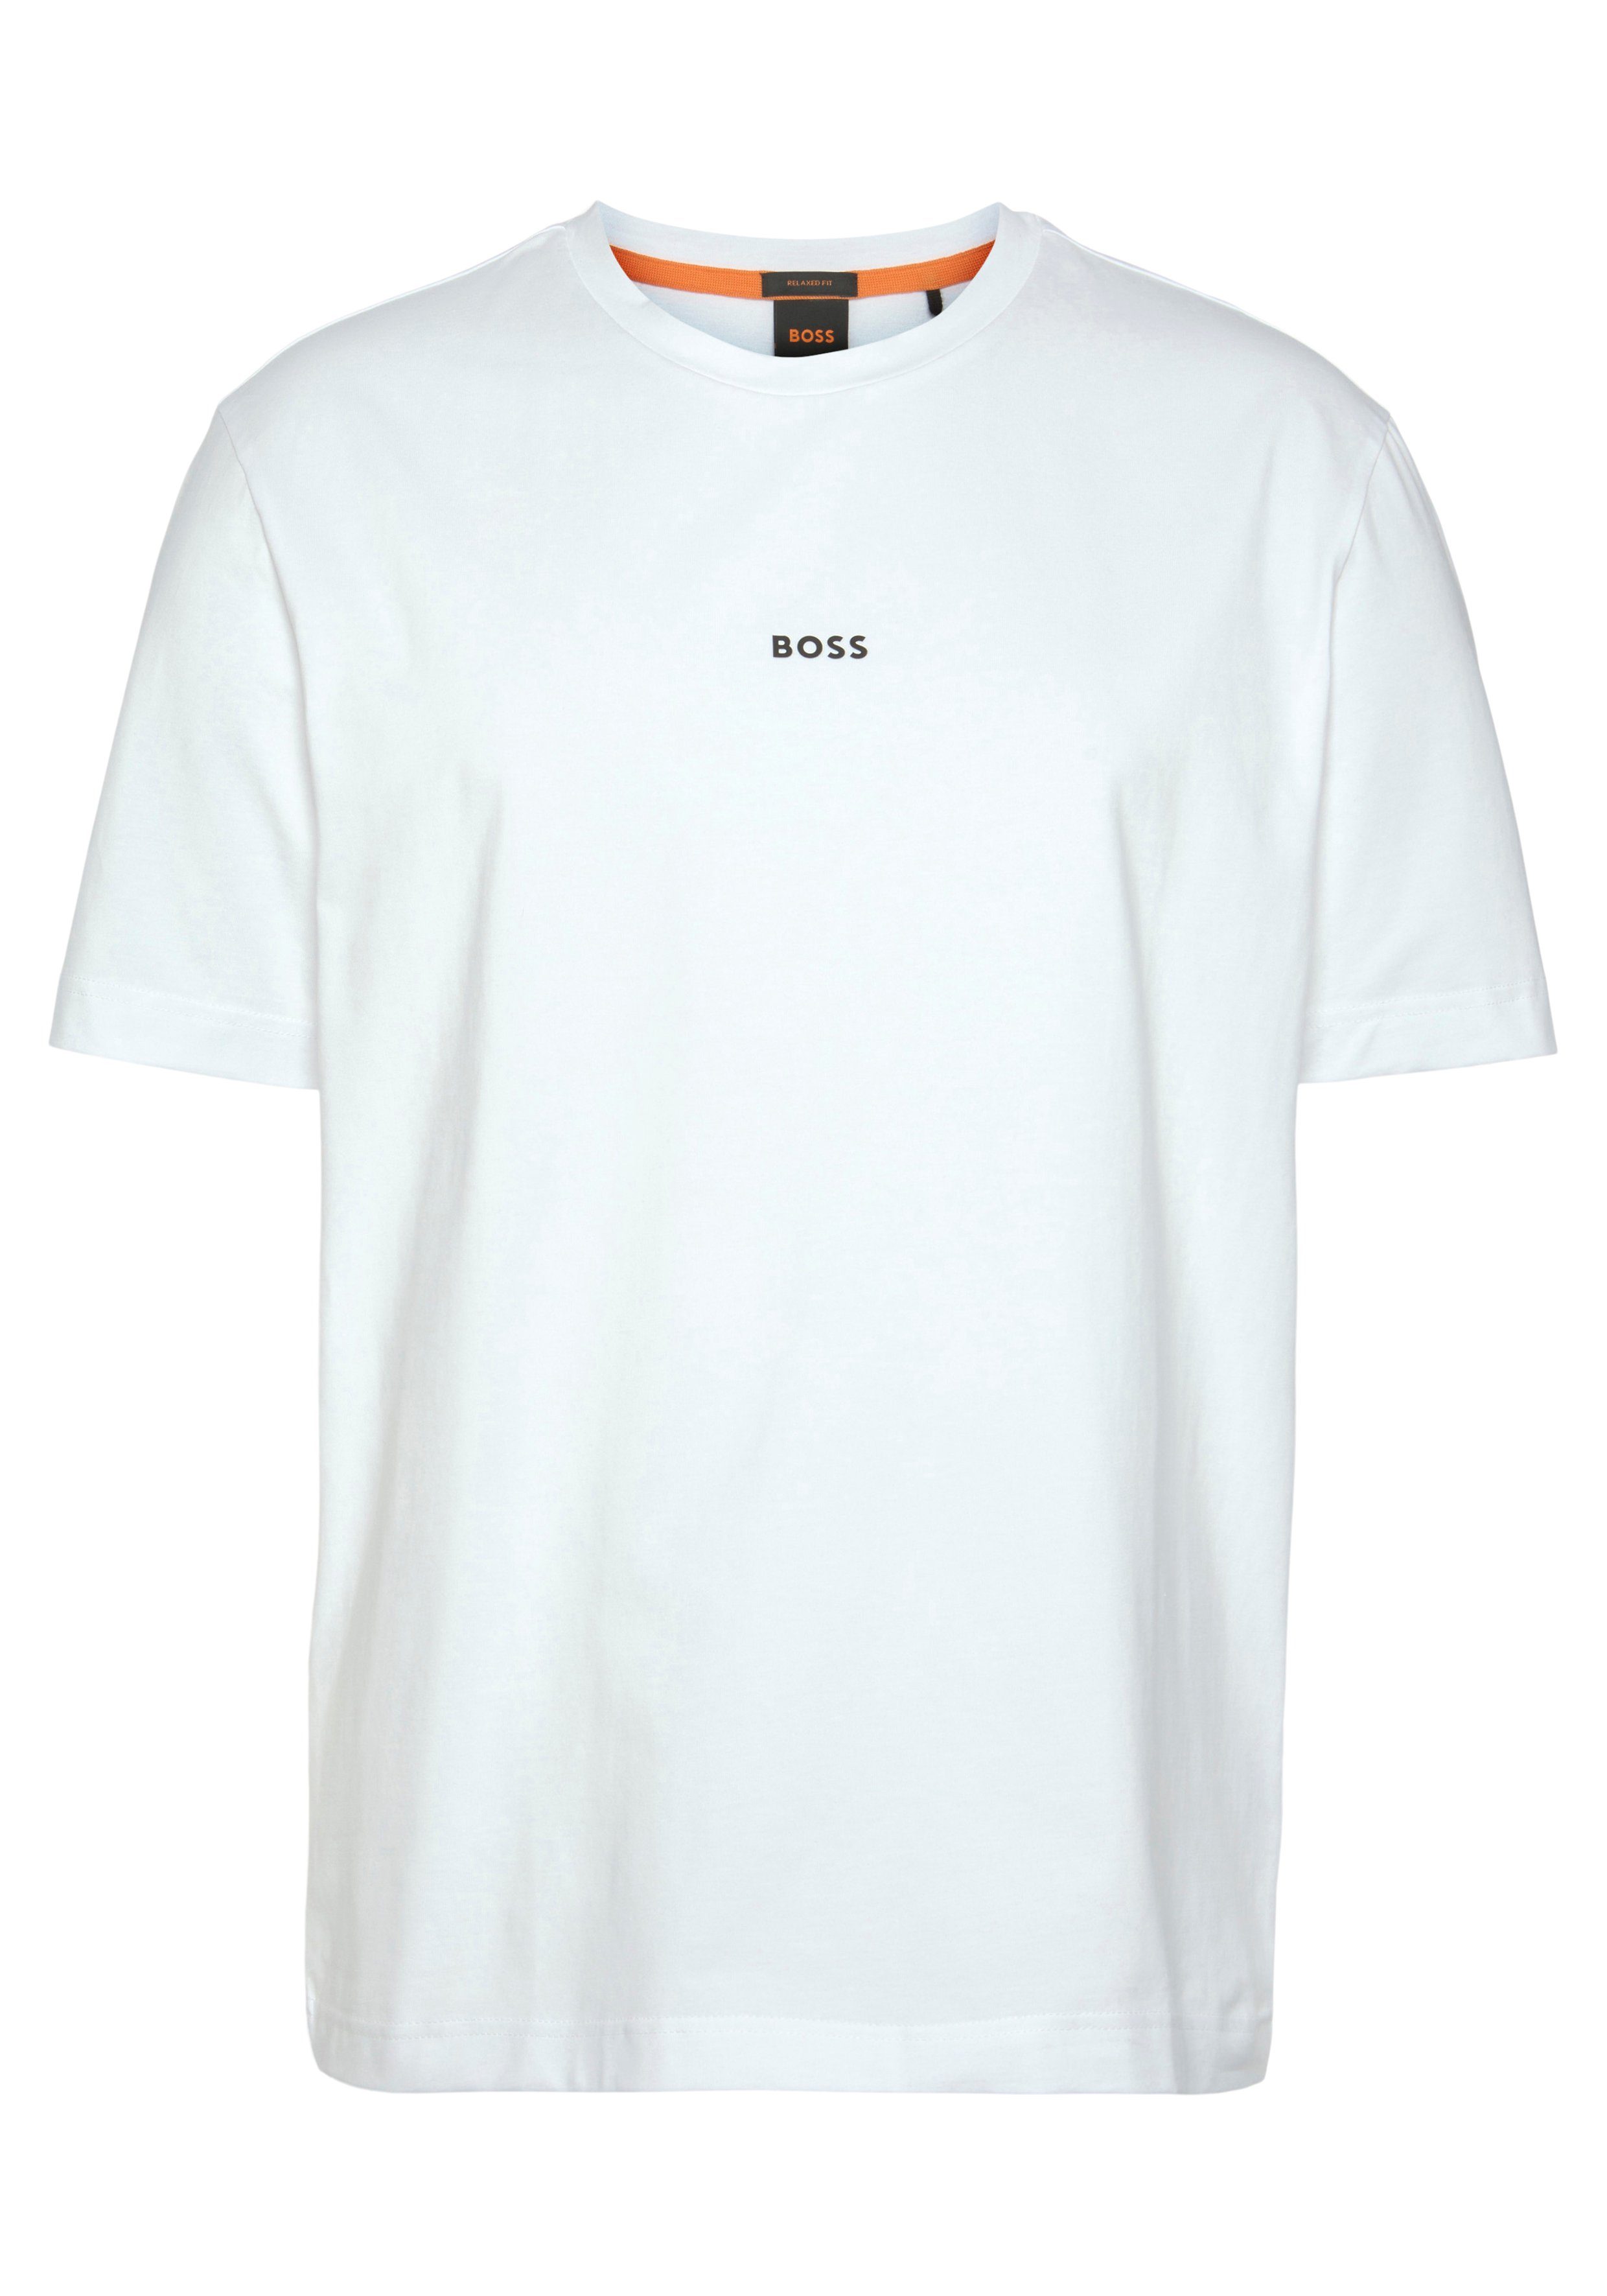 Rundhalsausschnitt BOSS mit TChup T-Shirt white100 ORANGE